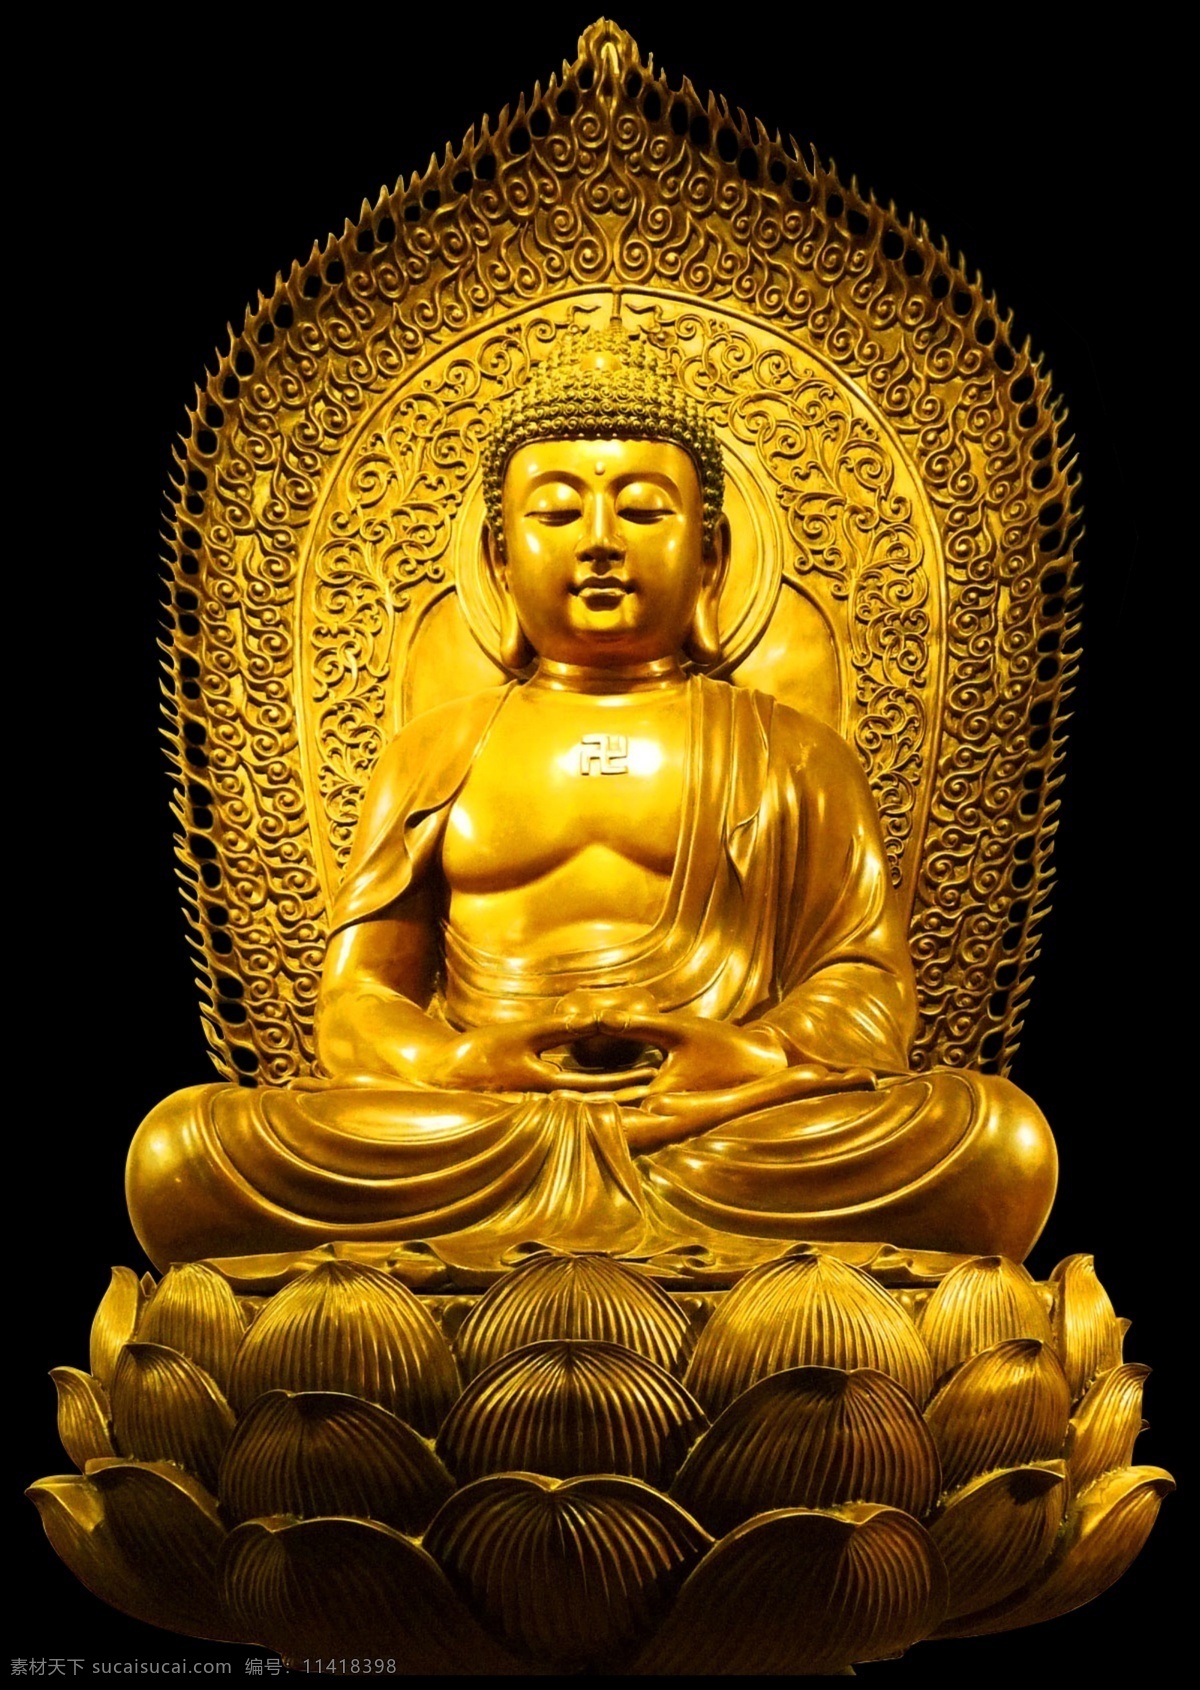 佛像素材 阿弥陀佛 金色佛像 佛像抠图 佛教素材 分层 人物